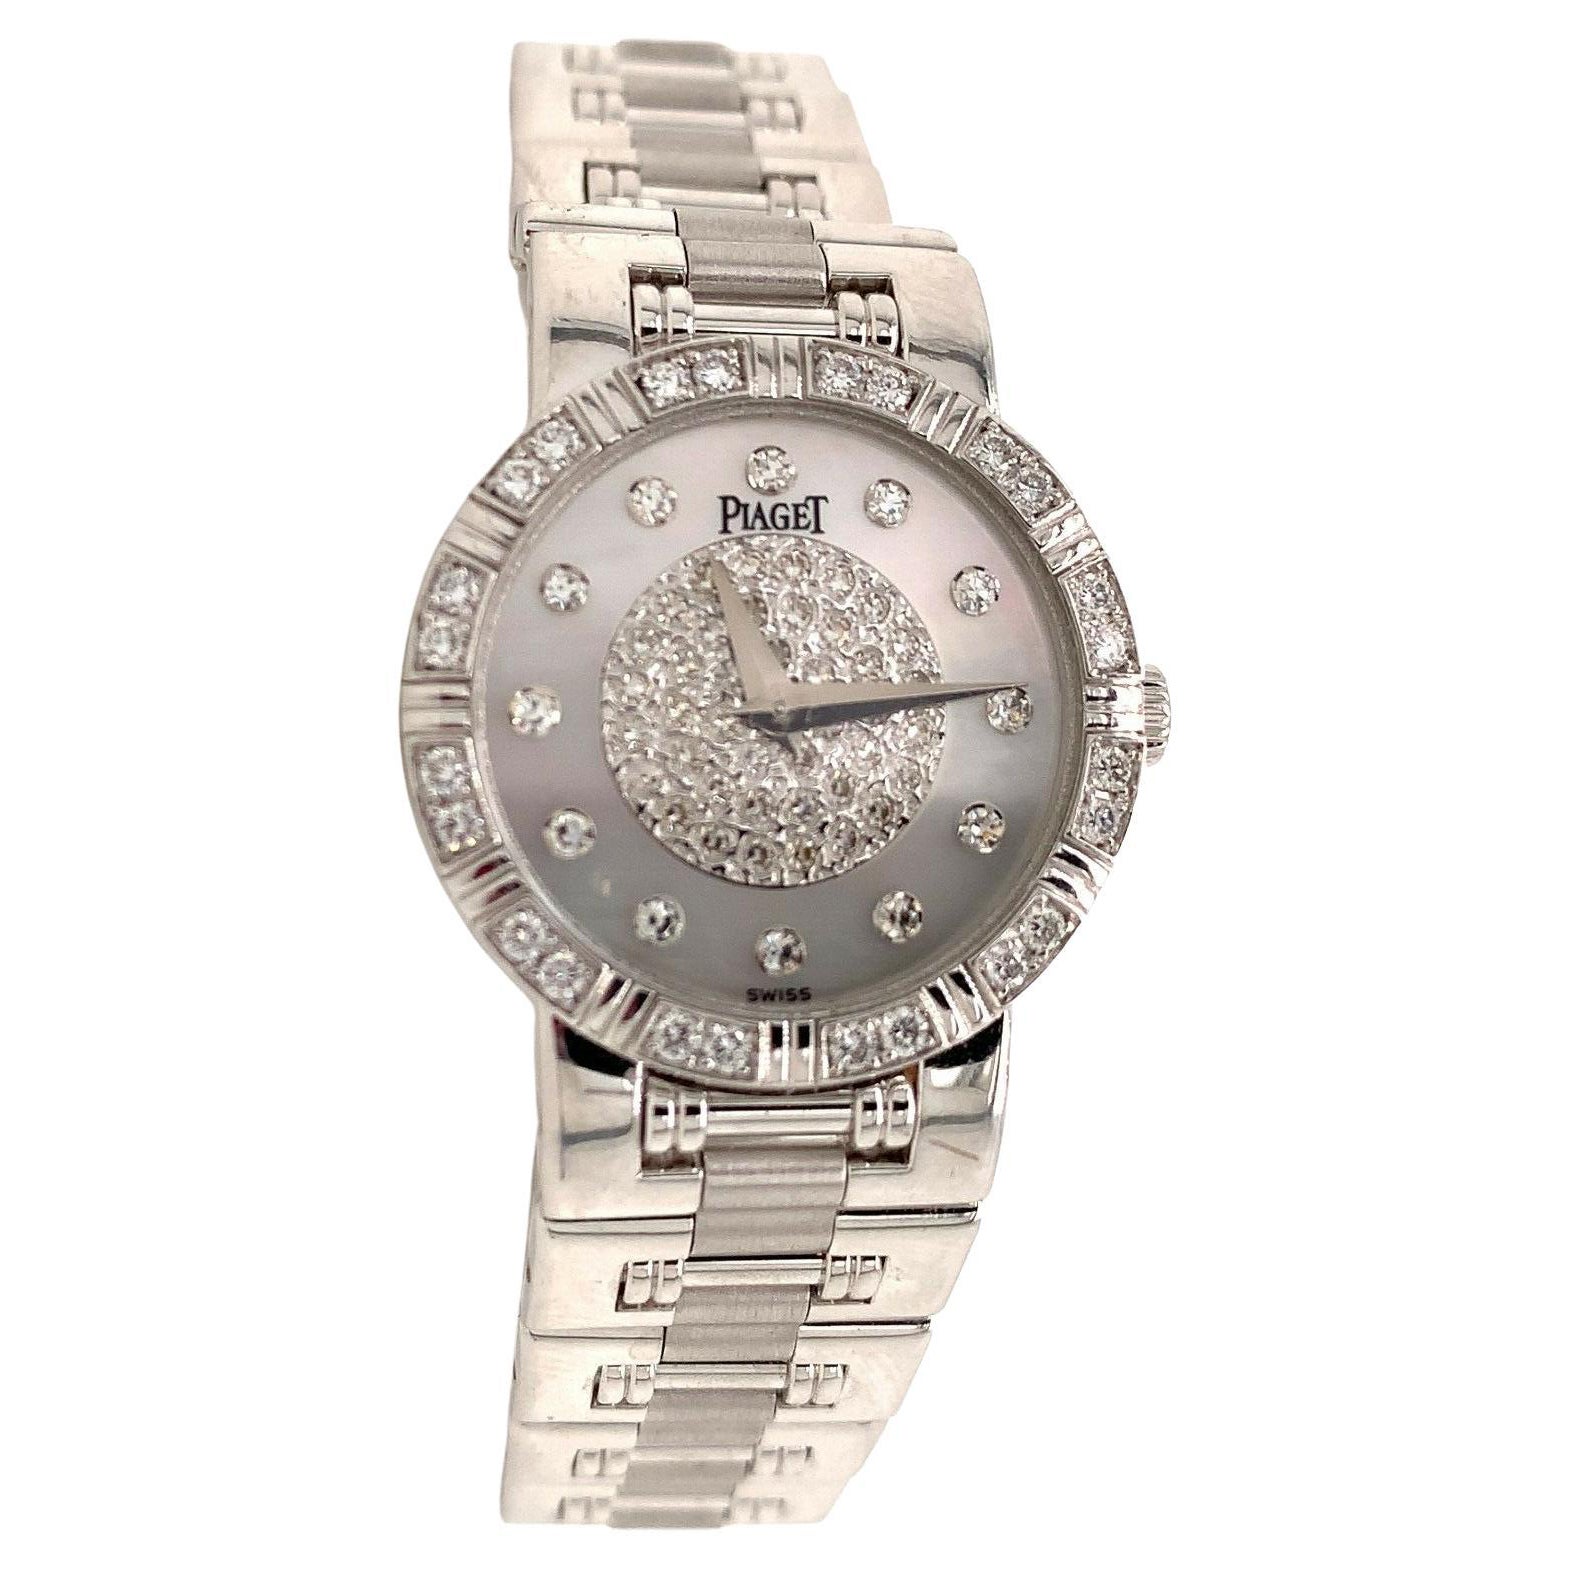 Piaget Dancer 18K White Gold & Diamond Woman's Watch